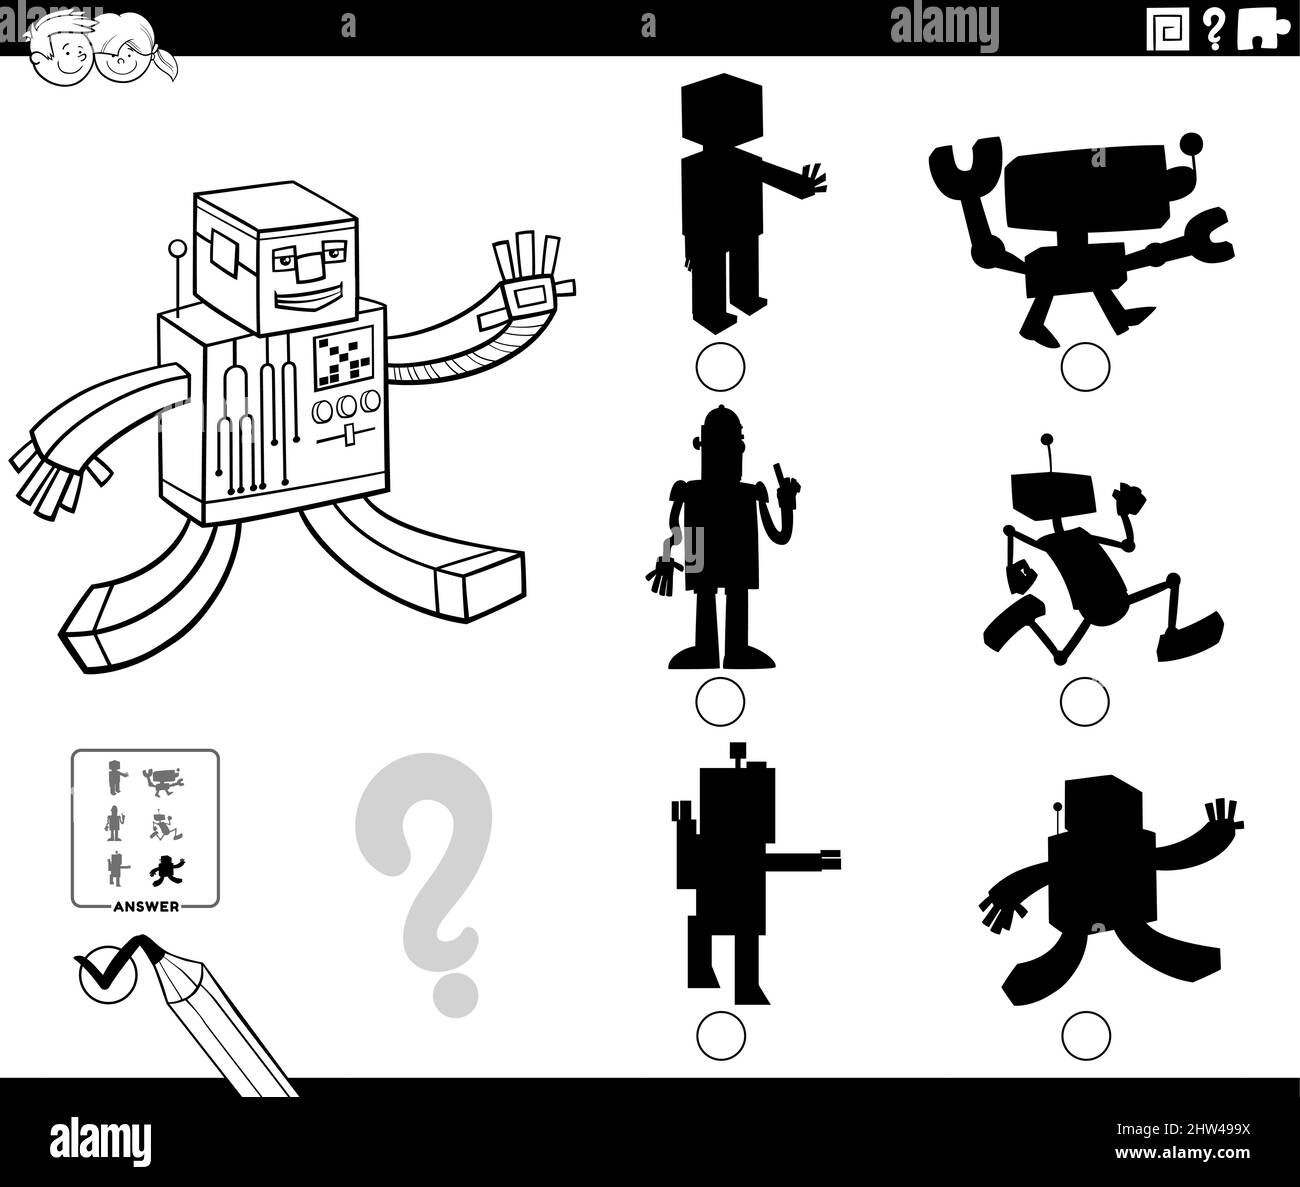 Dessin animé noir et blanc illustration de trouver la bonne image à l'ombre  jeu éducatif pour les enfants avec des robots personnages coloriage livre  pag Image Vectorielle Stock - Alamy